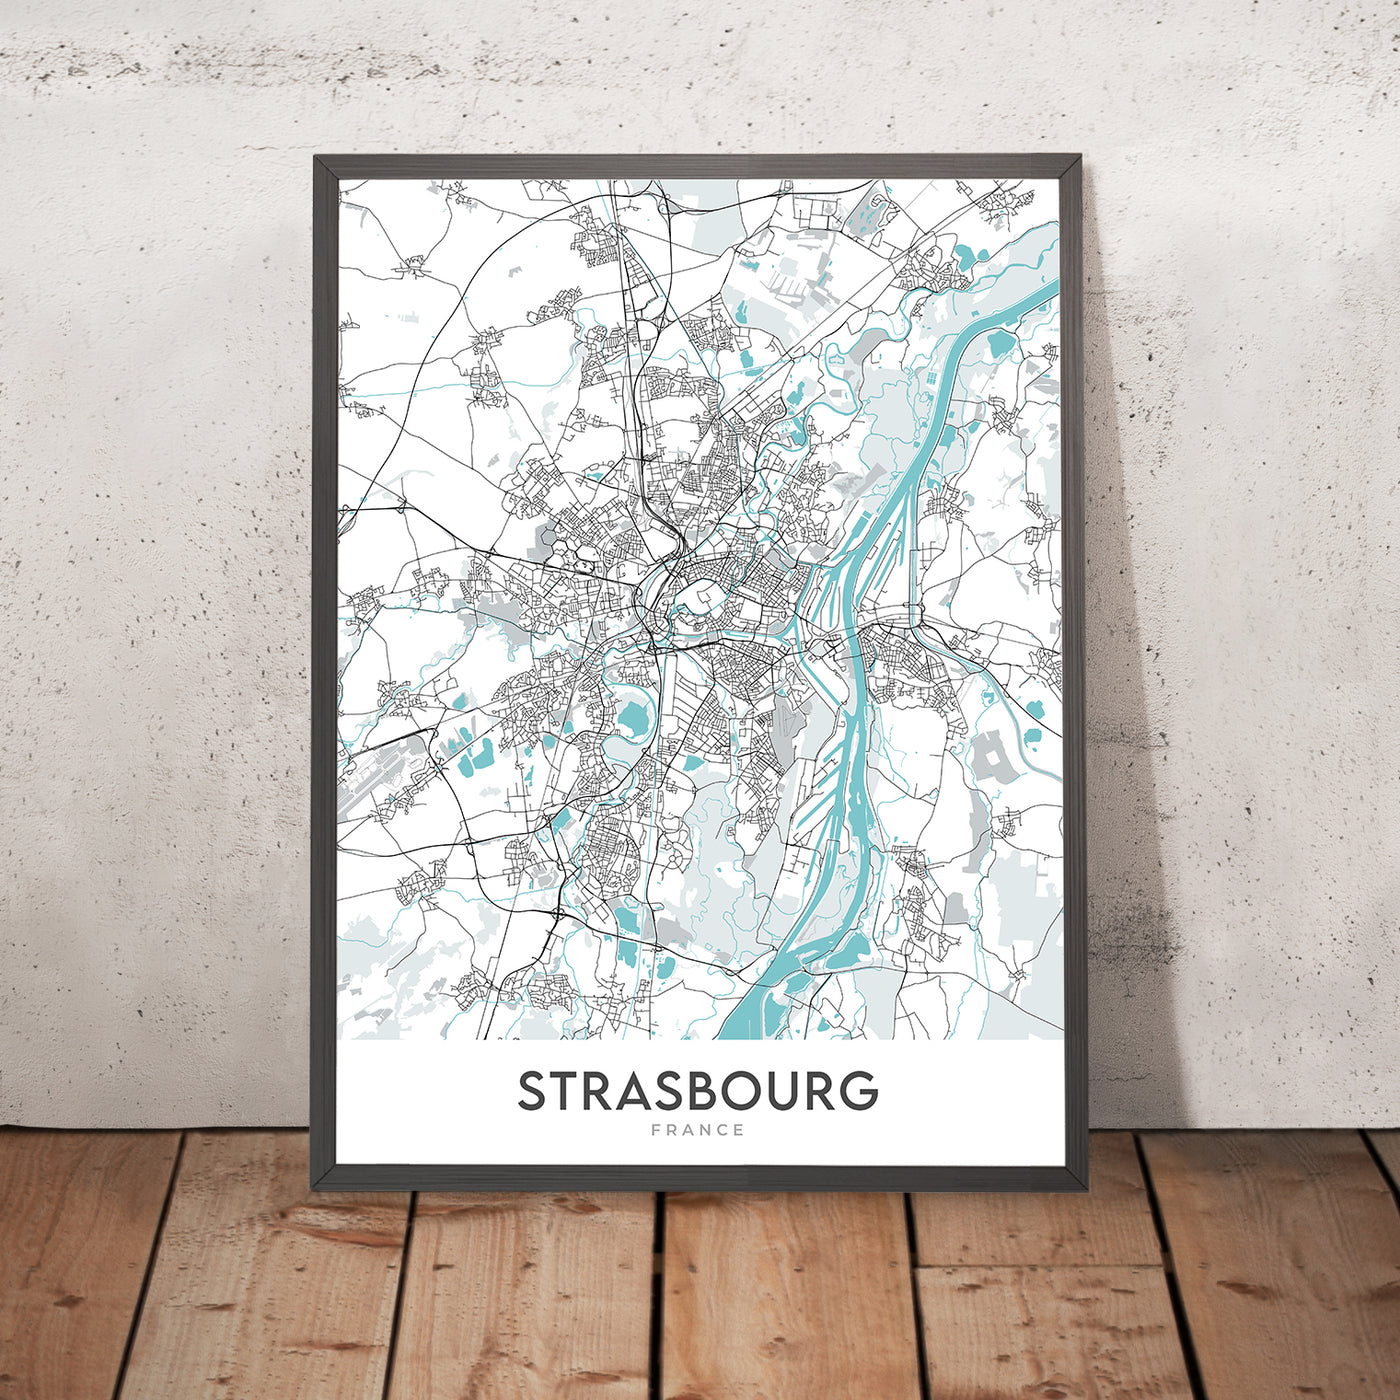 Plan de la ville moderne de Strasbourg, France : Cathédrale, Rohan, Parc, Gare, A35